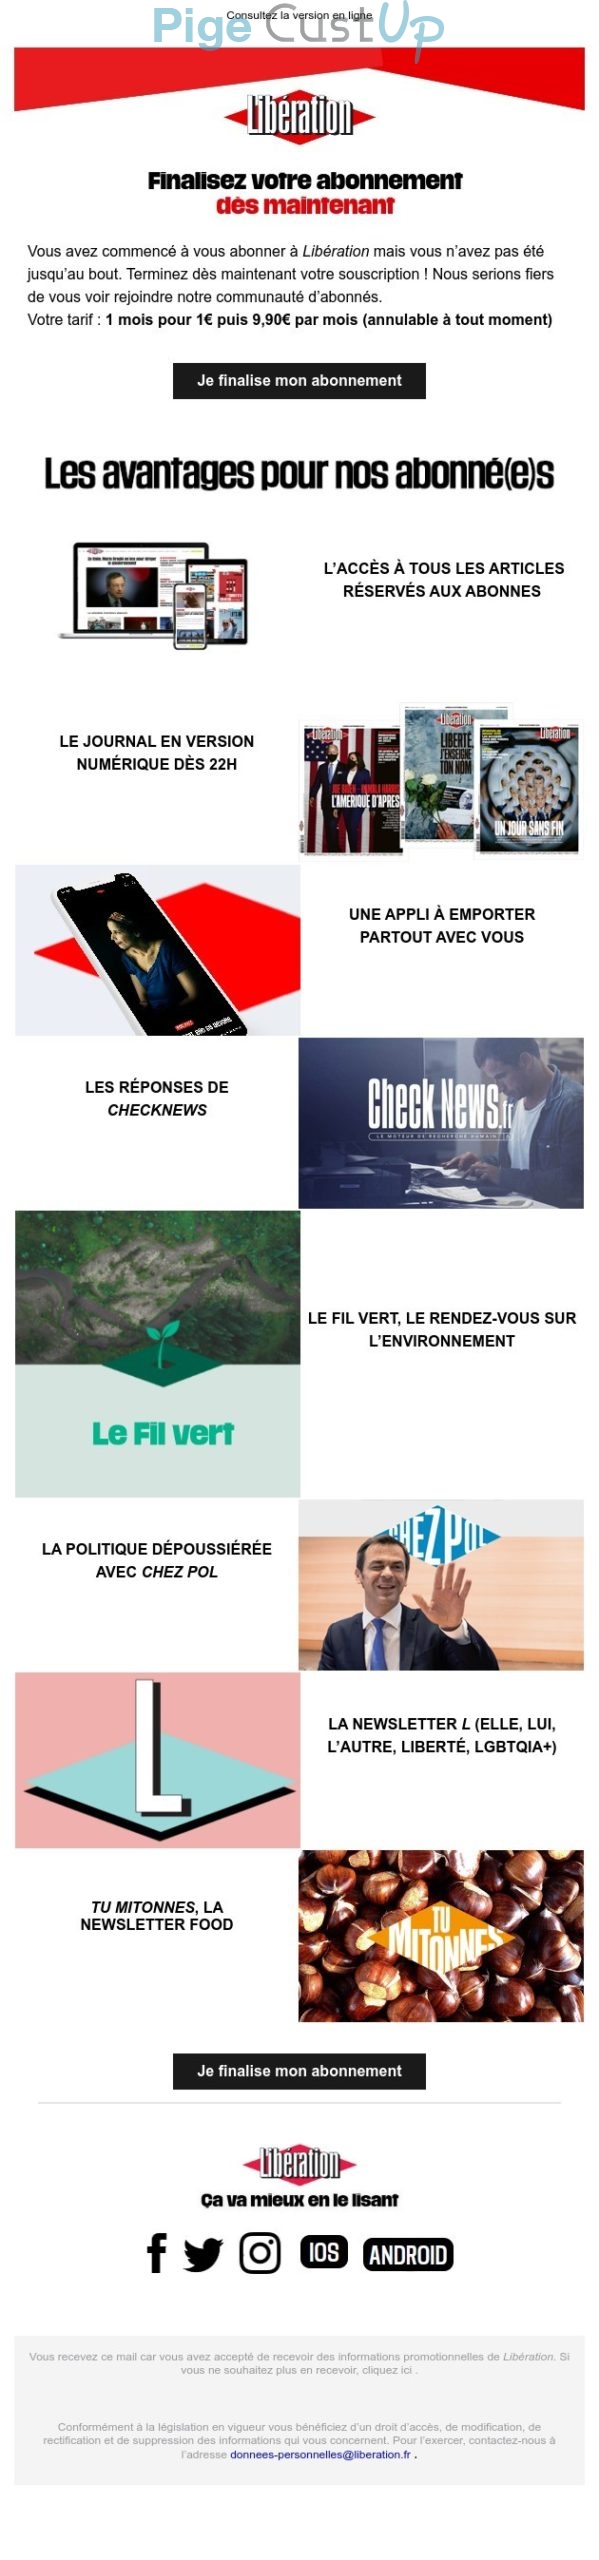 Exemple de Type de media  e-mailing - Libération - Marketing Acquisition - Panier abandonné